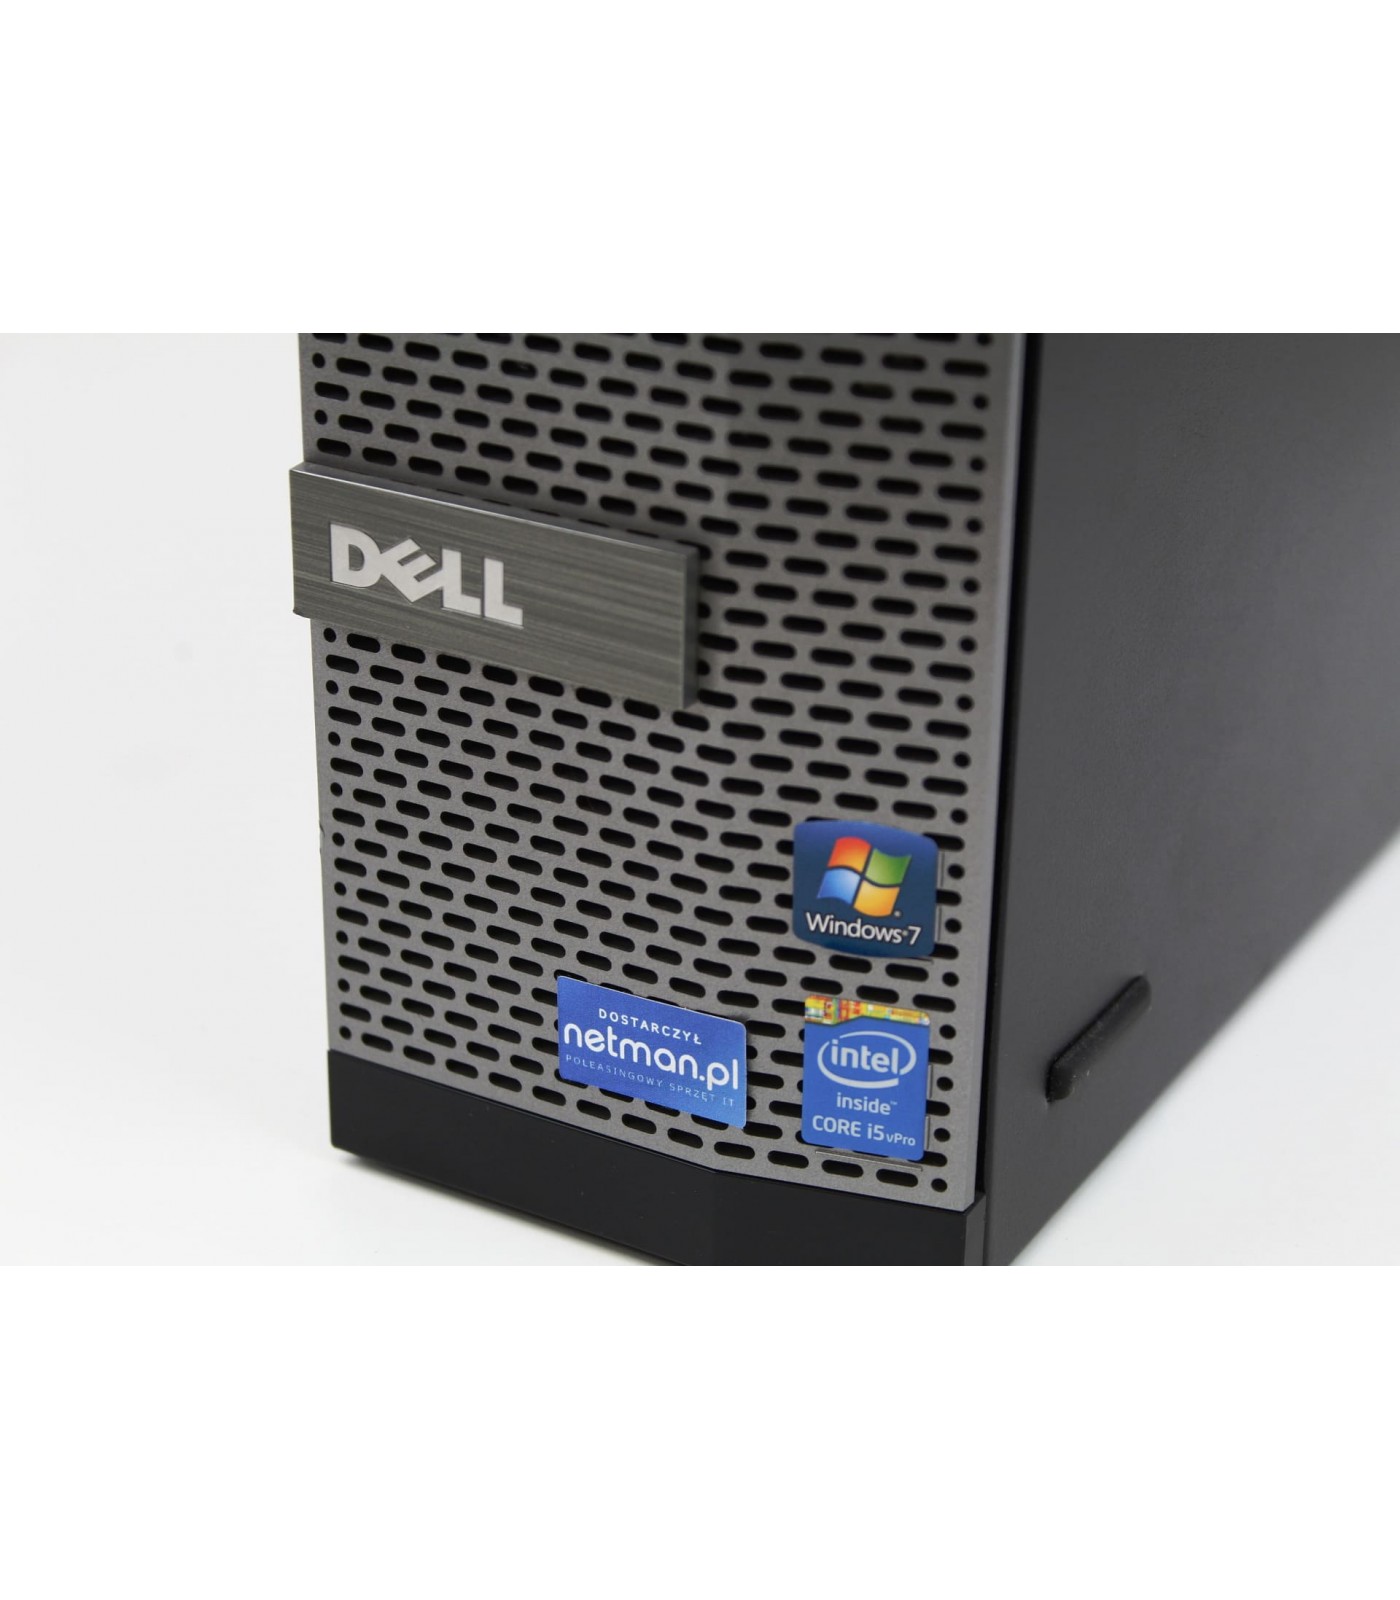 Poleasingowy komputer Dell Optiplex z procesorem i5-4590 z napędem DVD w klasie A+